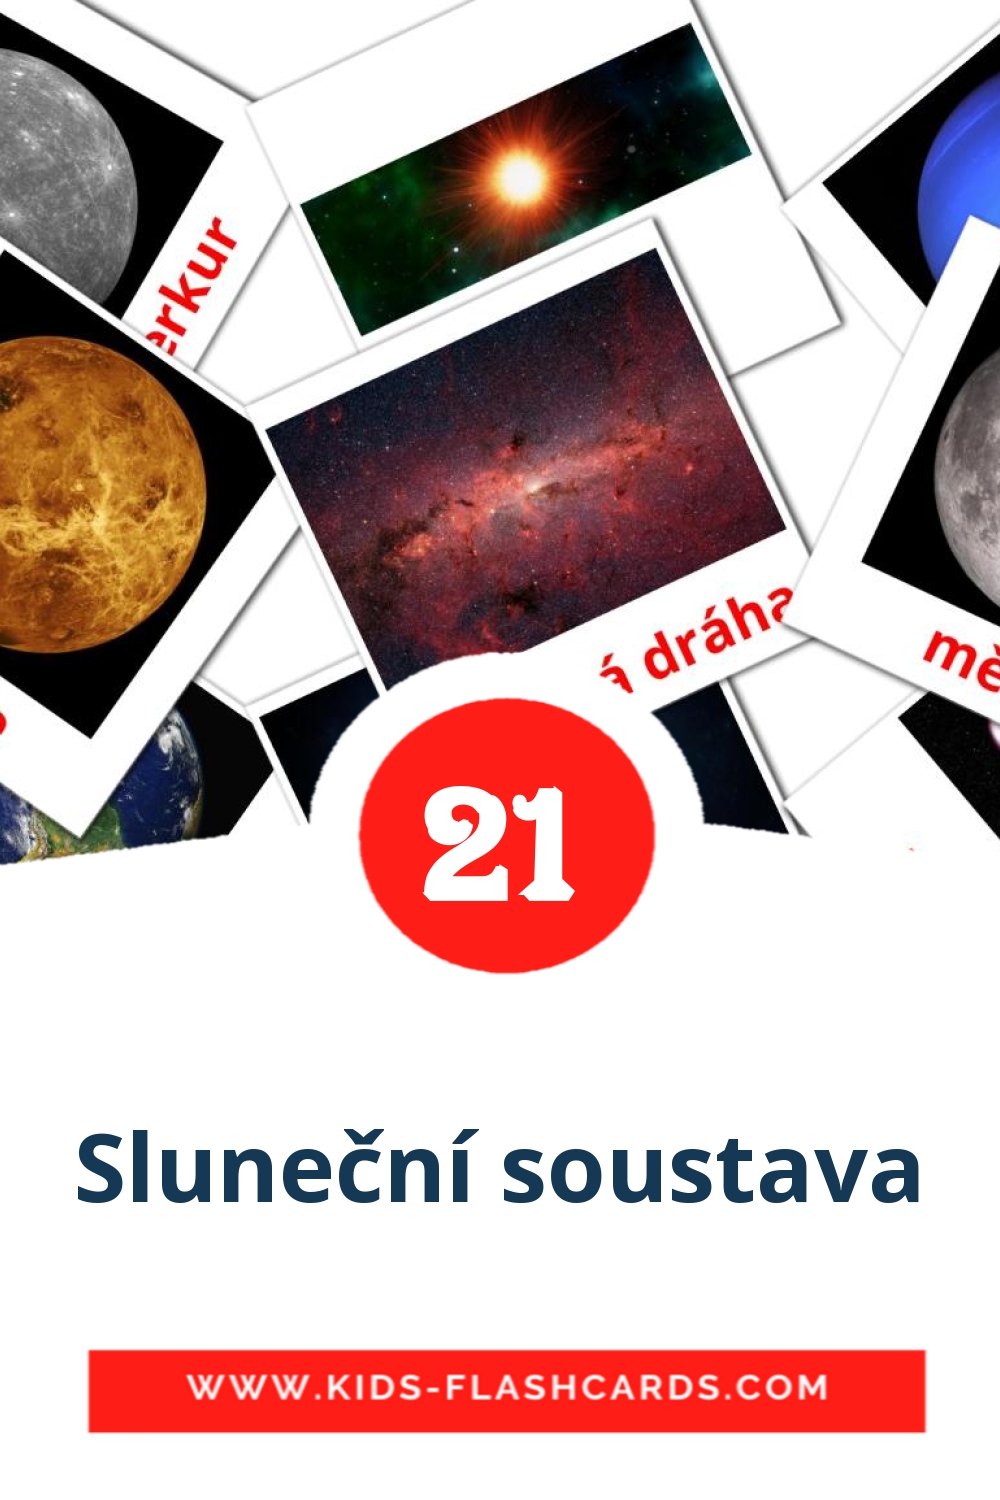 21 carte illustrate di Sluneční soustava per la scuola materna in ceco